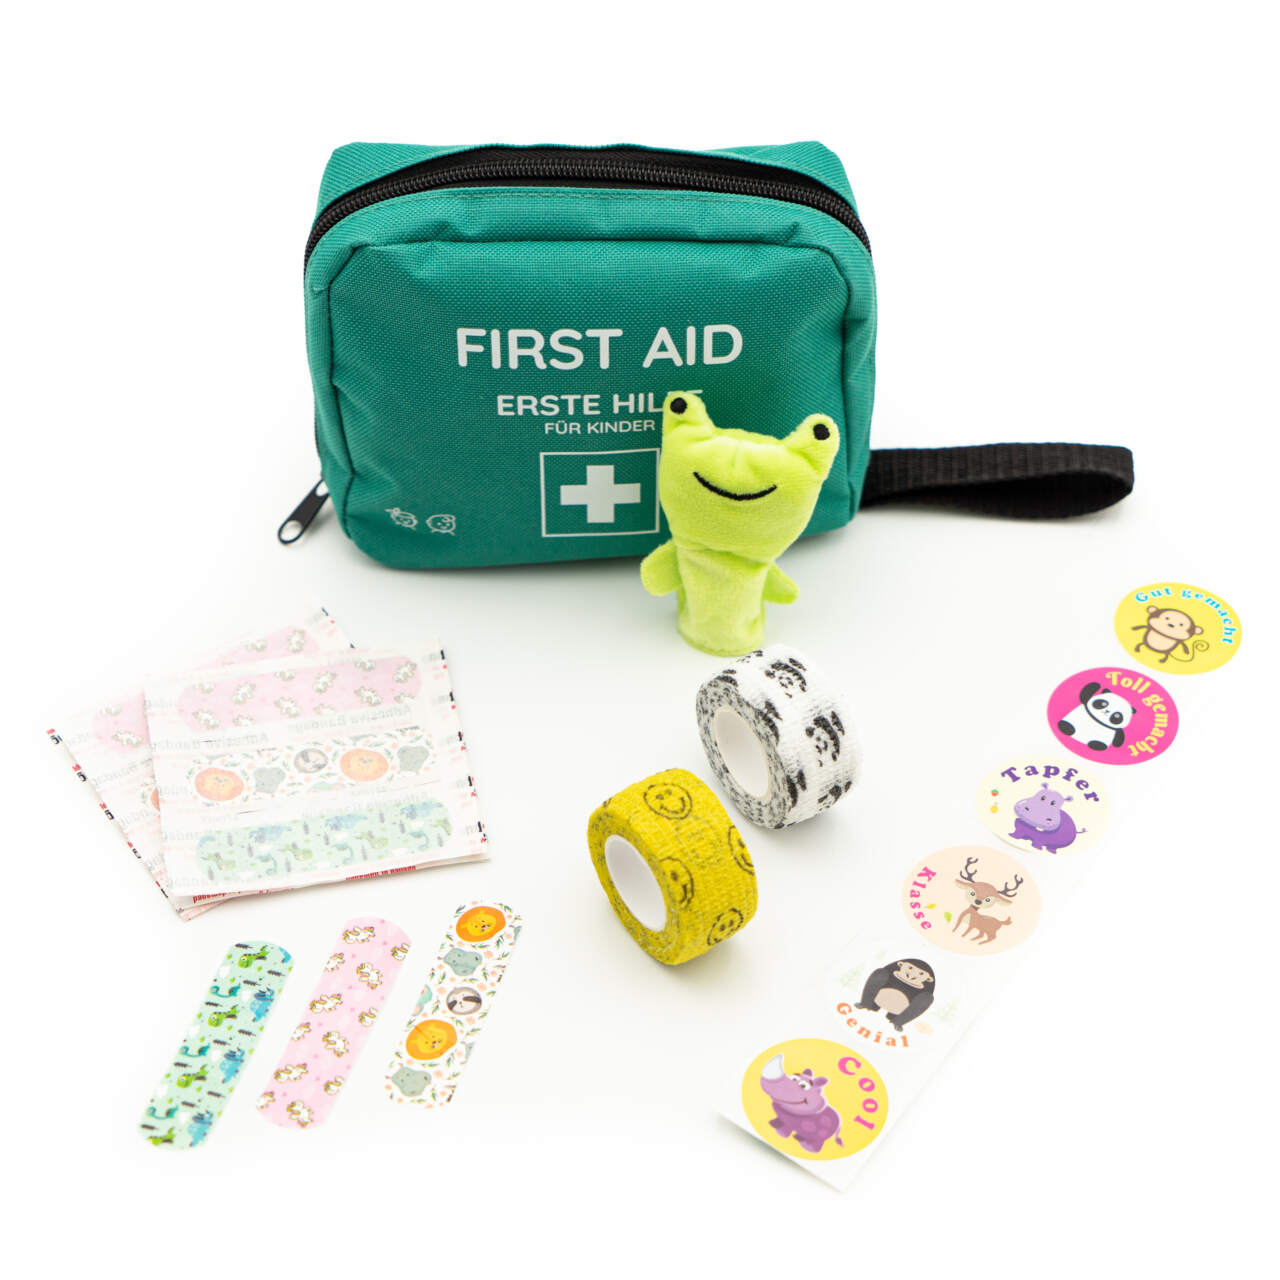 Erste-Hilfe-Set, 13-teilig kaufen bei